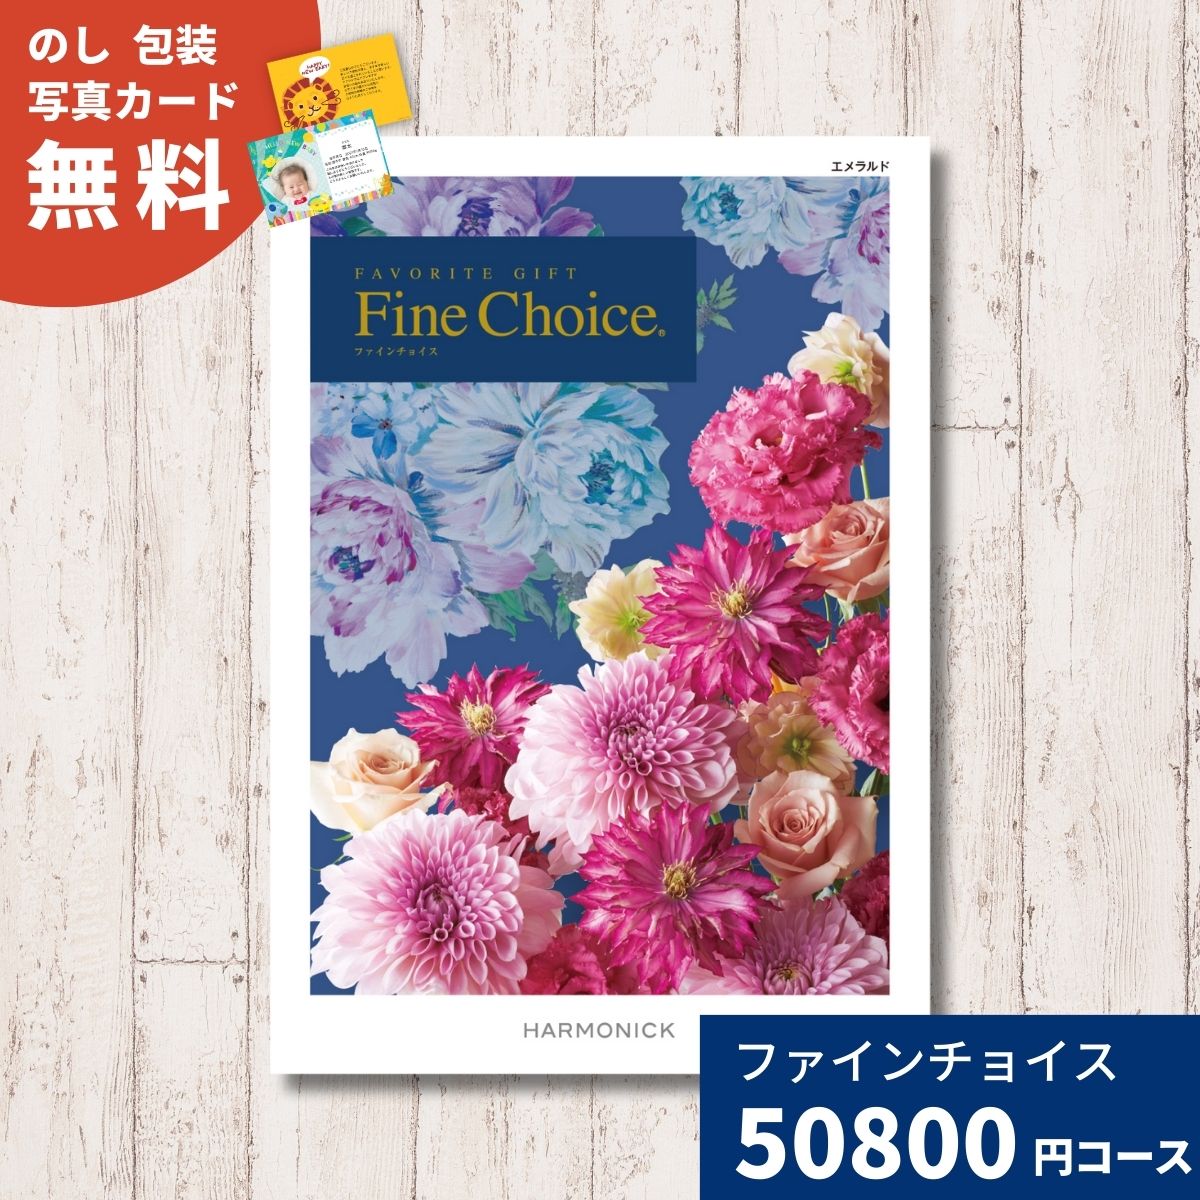 【ポイント10倍】カタログギフト Fine Choice フ